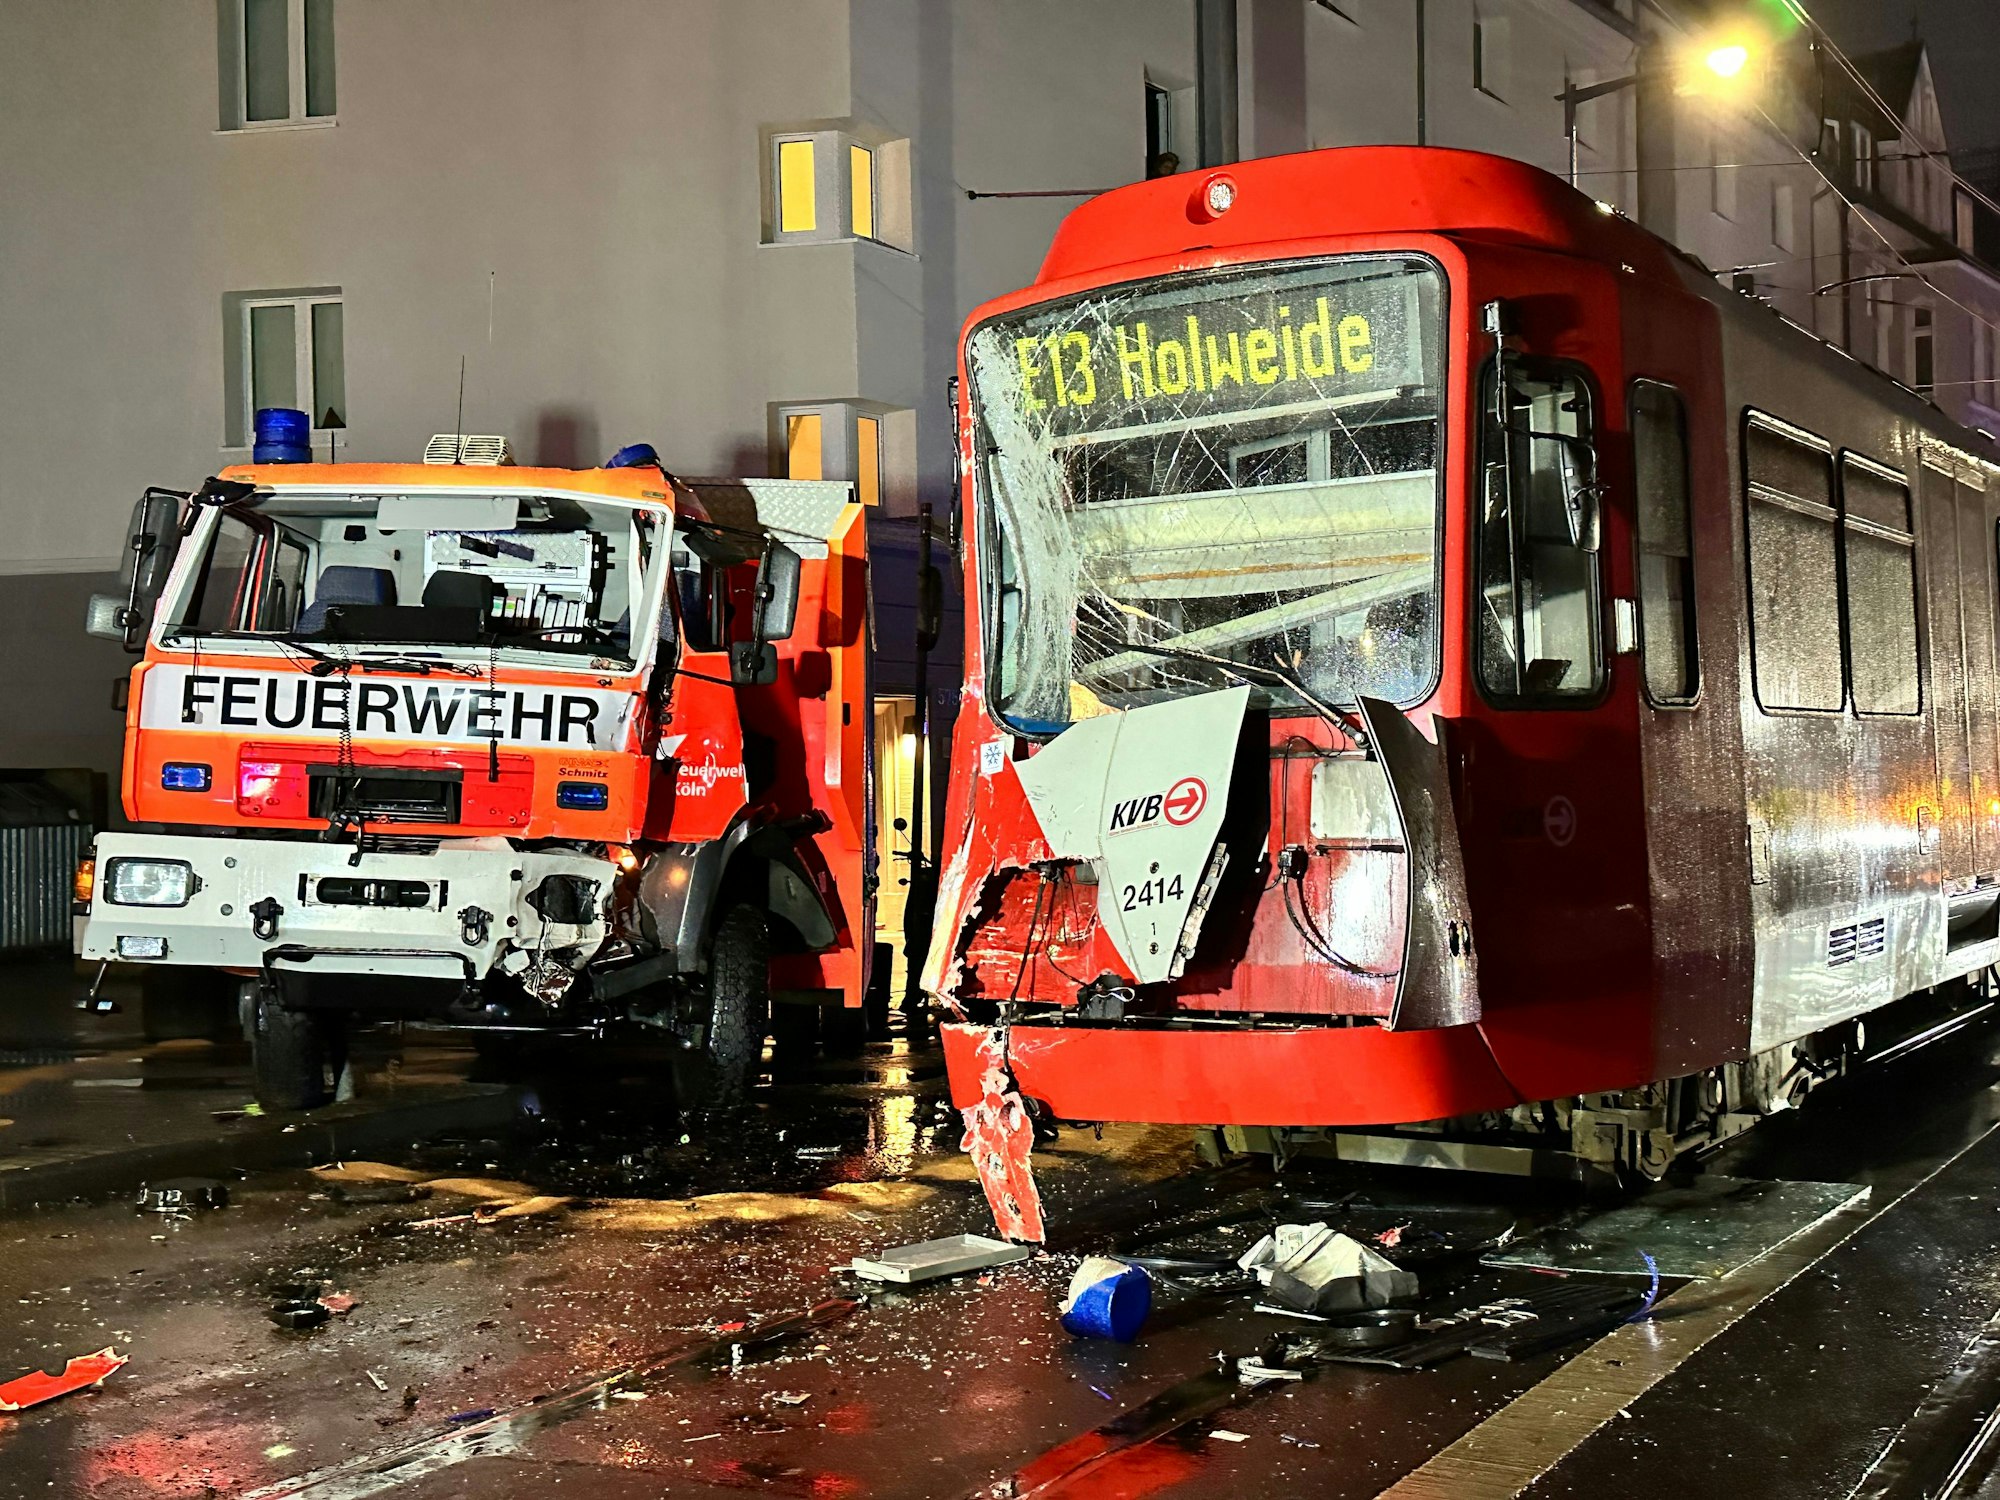 Ein demolierter Feuerwehrwagen und eine KVB-Bahn